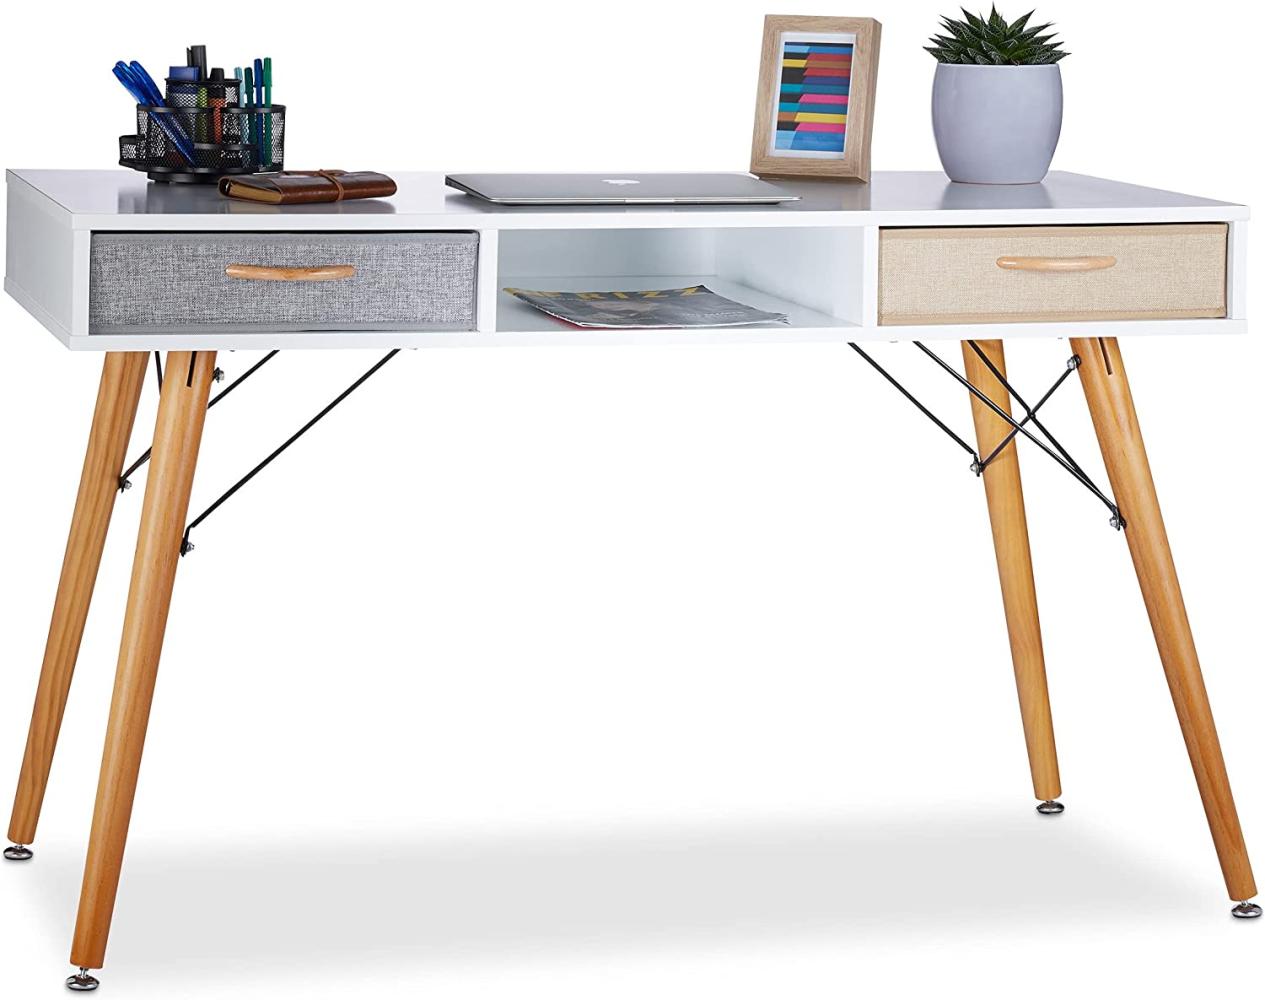 Relaxdays, weiß Schreibtisch, skandin. Design, 3 Fächer, 2 Schubladen, Computertisch HxBxT: ca. 74 x 125 x 60 cm, Holz, Standard Bild 1